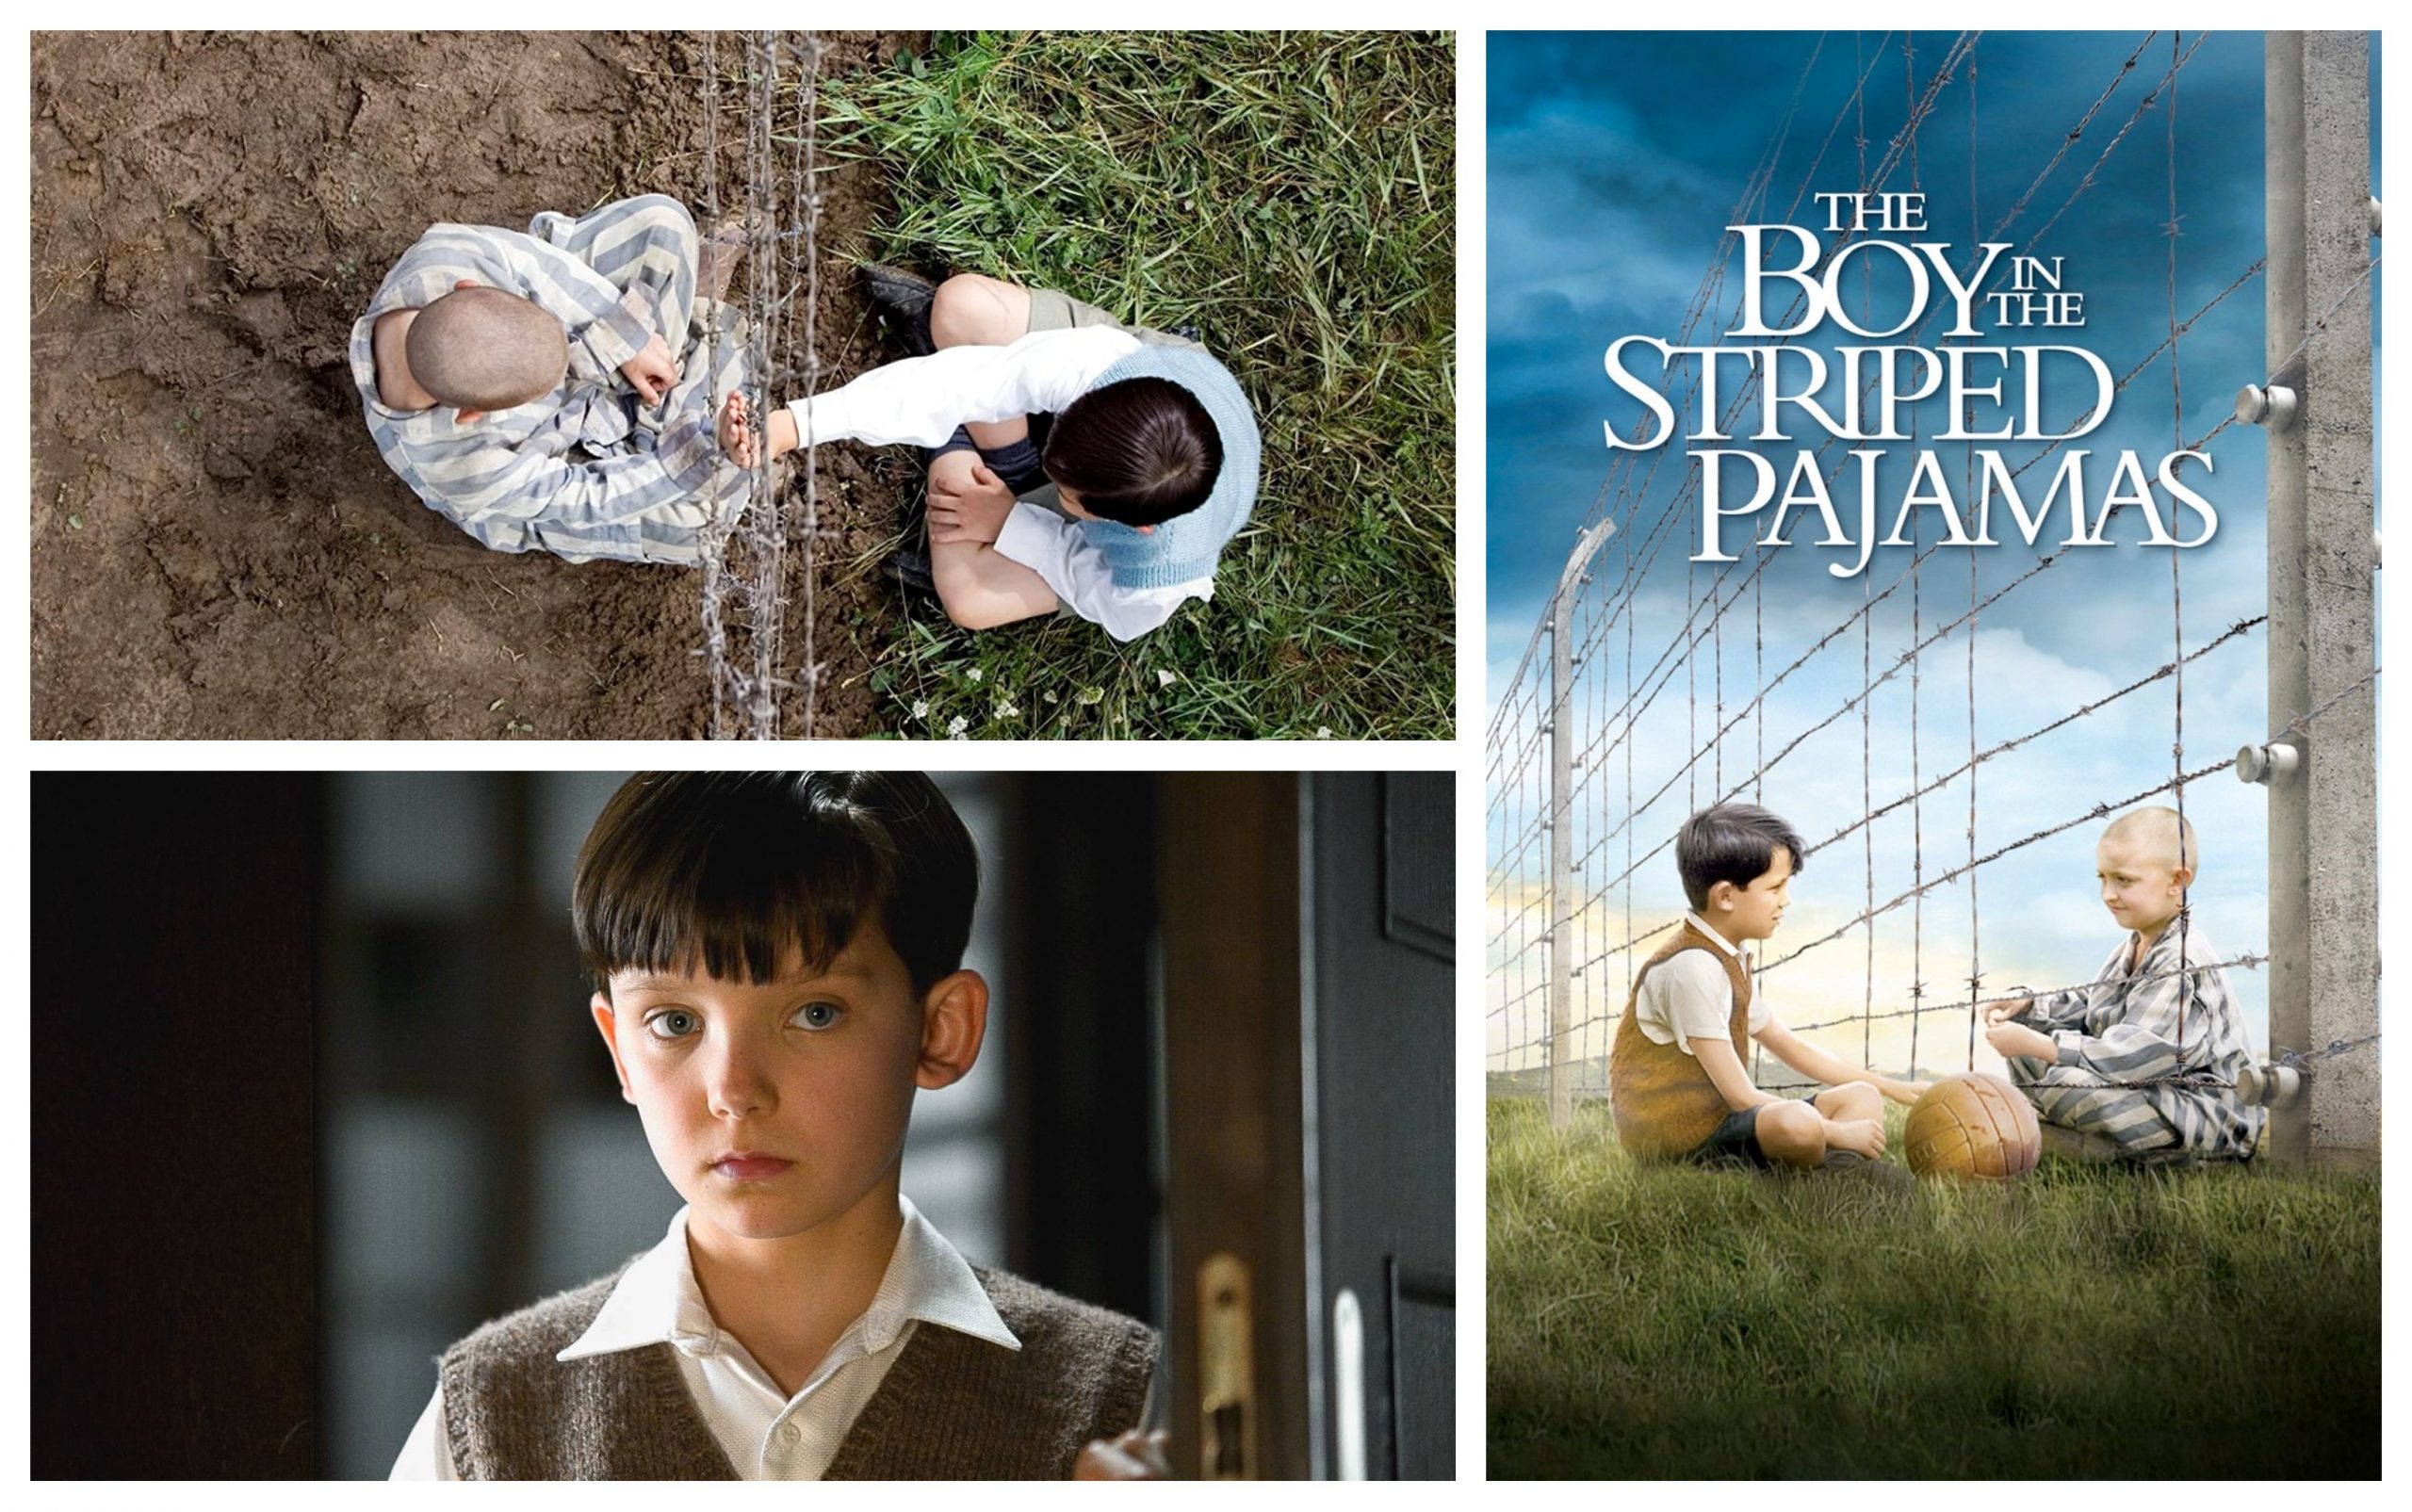 Student generation Turn down Băiatul cu pijama vărgată – o altfel de amintire a Holocaustului • Film •  Zile și Nopți